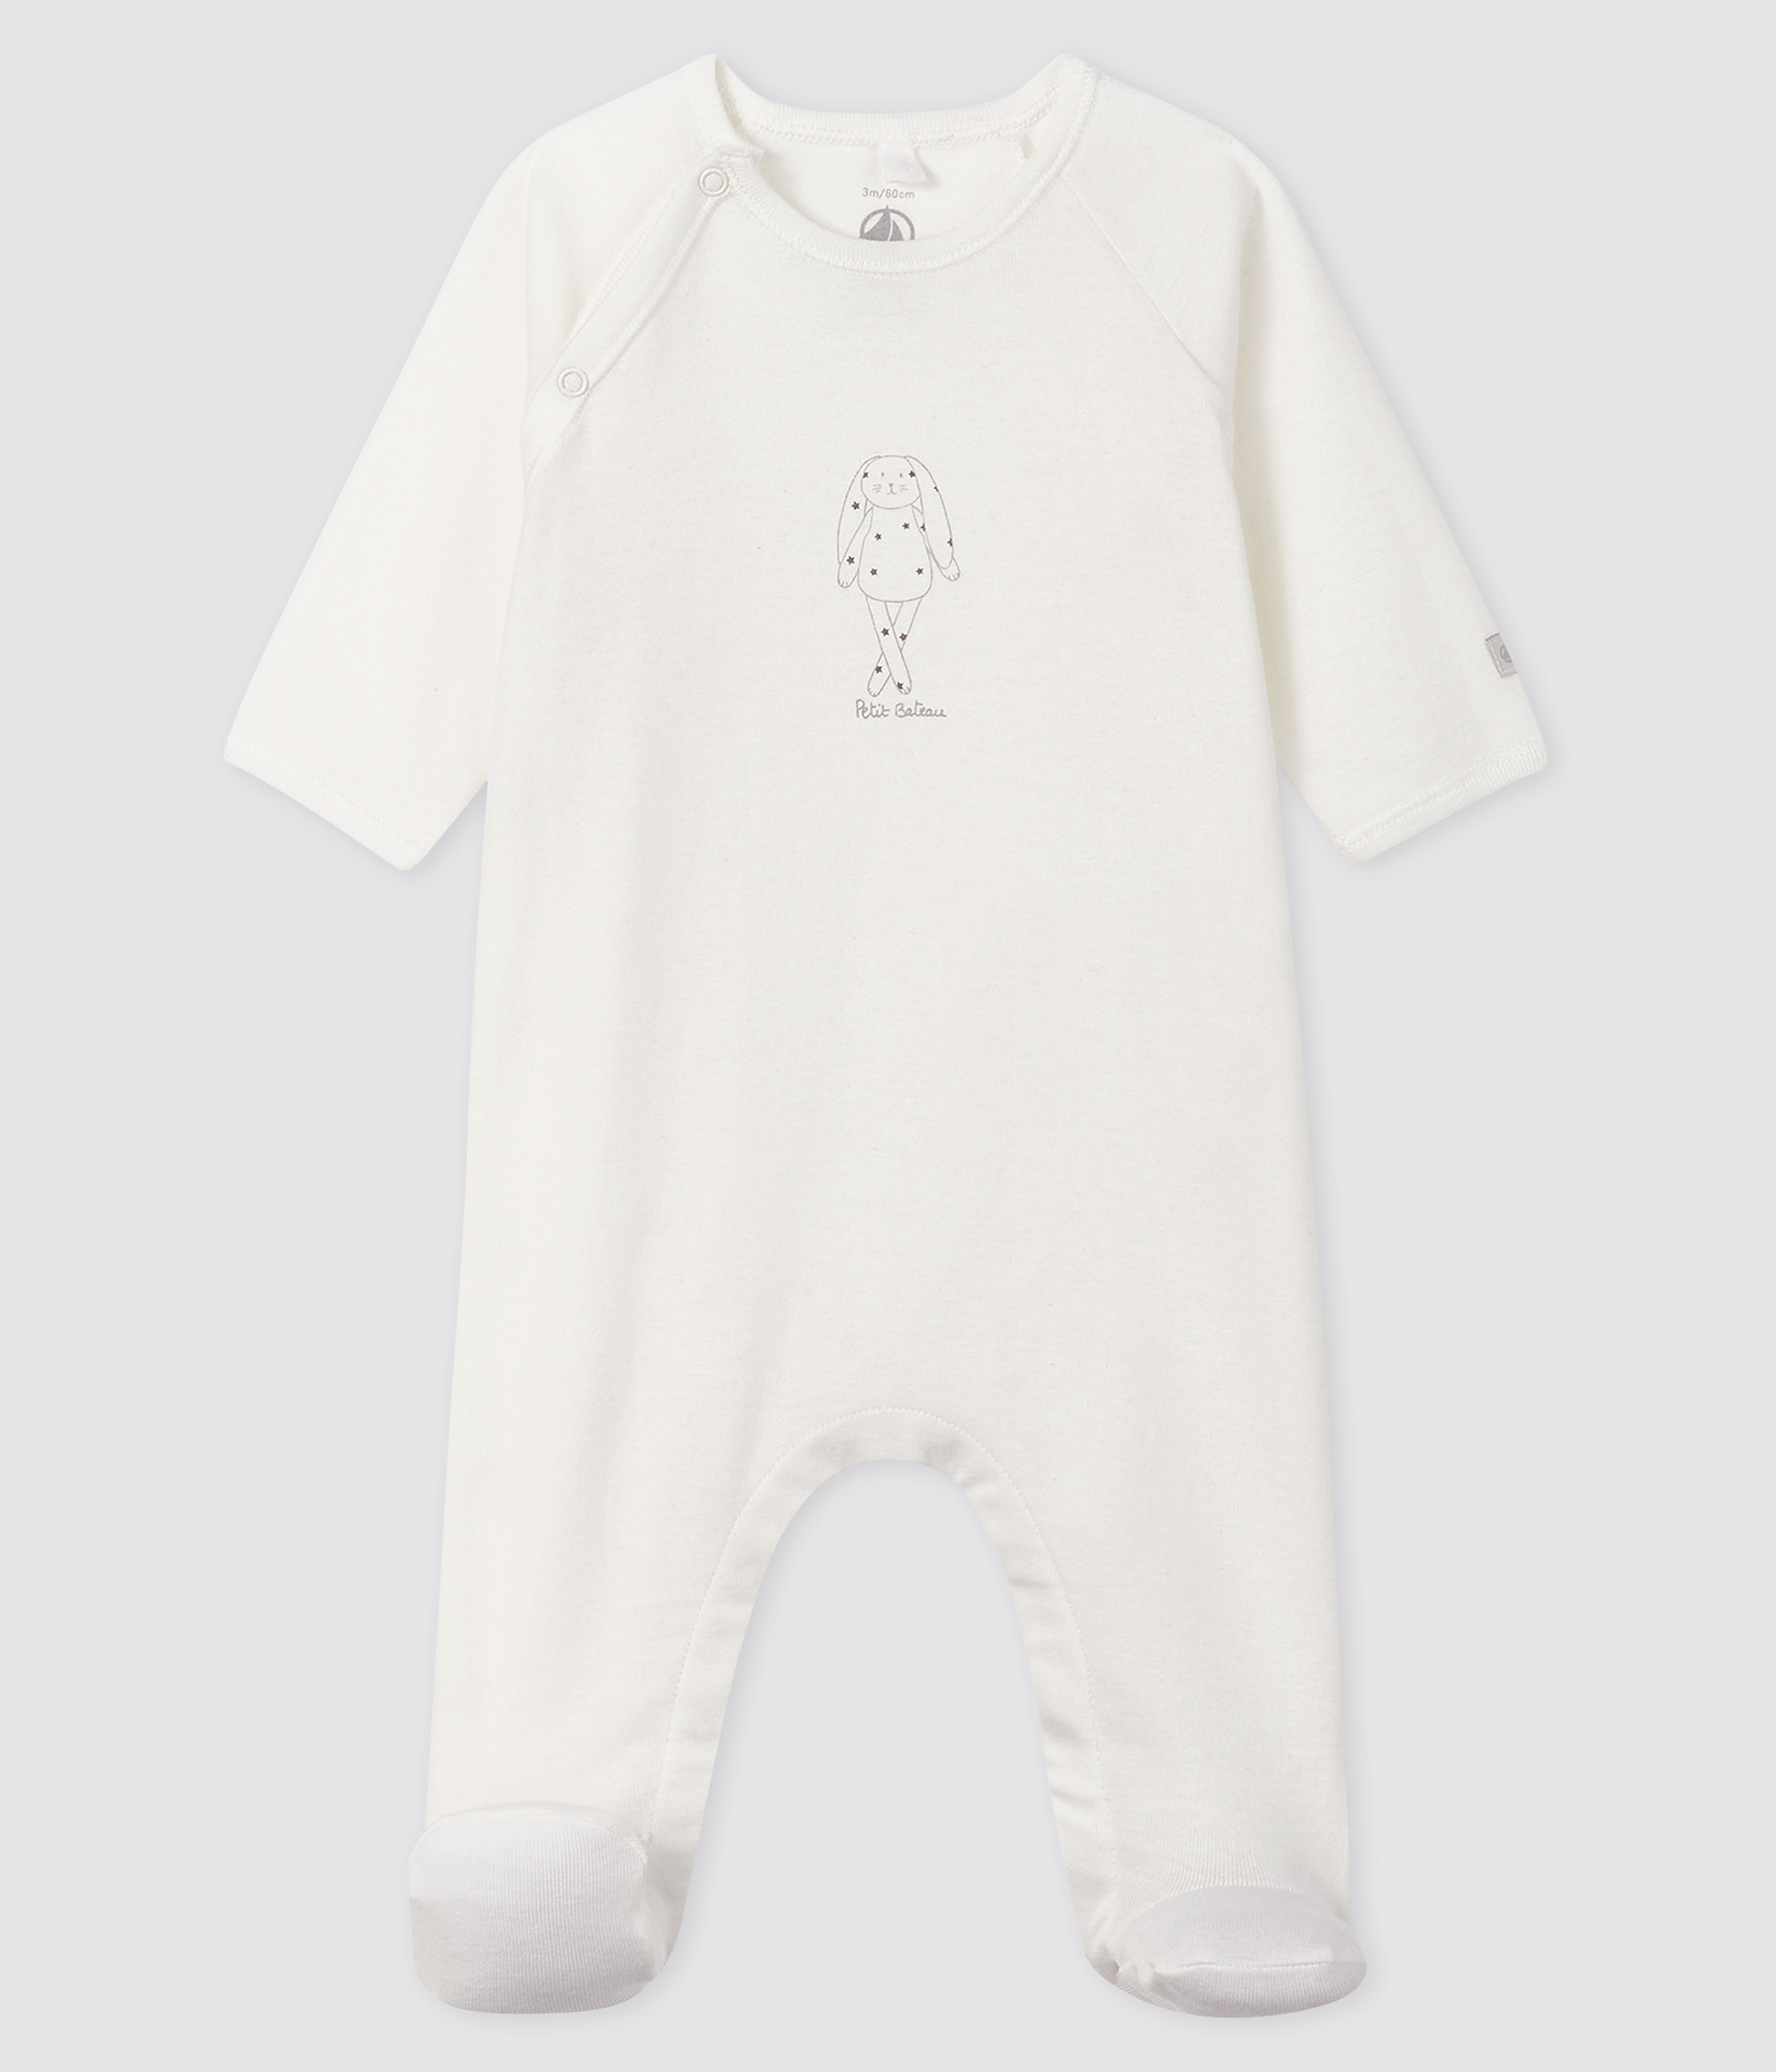 BN Werbeantwort Jungen weiß Baumwolle Sailor Strampler Newborn 0/3 Monate